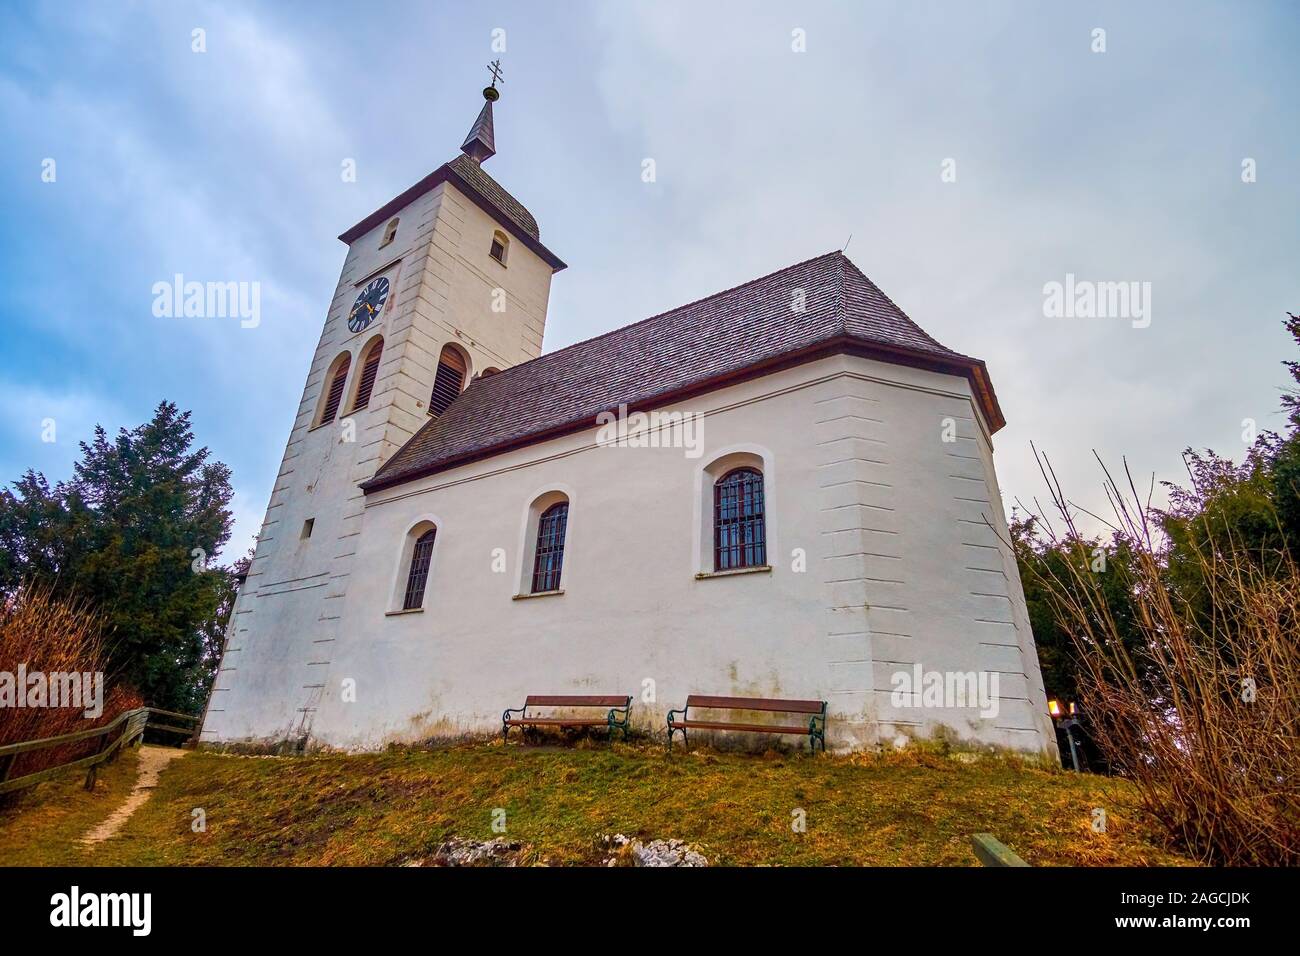 La bellissima medievale Johannesberg Cappella con pareti bianche è la più notevole punto di riferimento di Traunkirchen Village, situato sulla cima della roccia, Aust Foto Stock